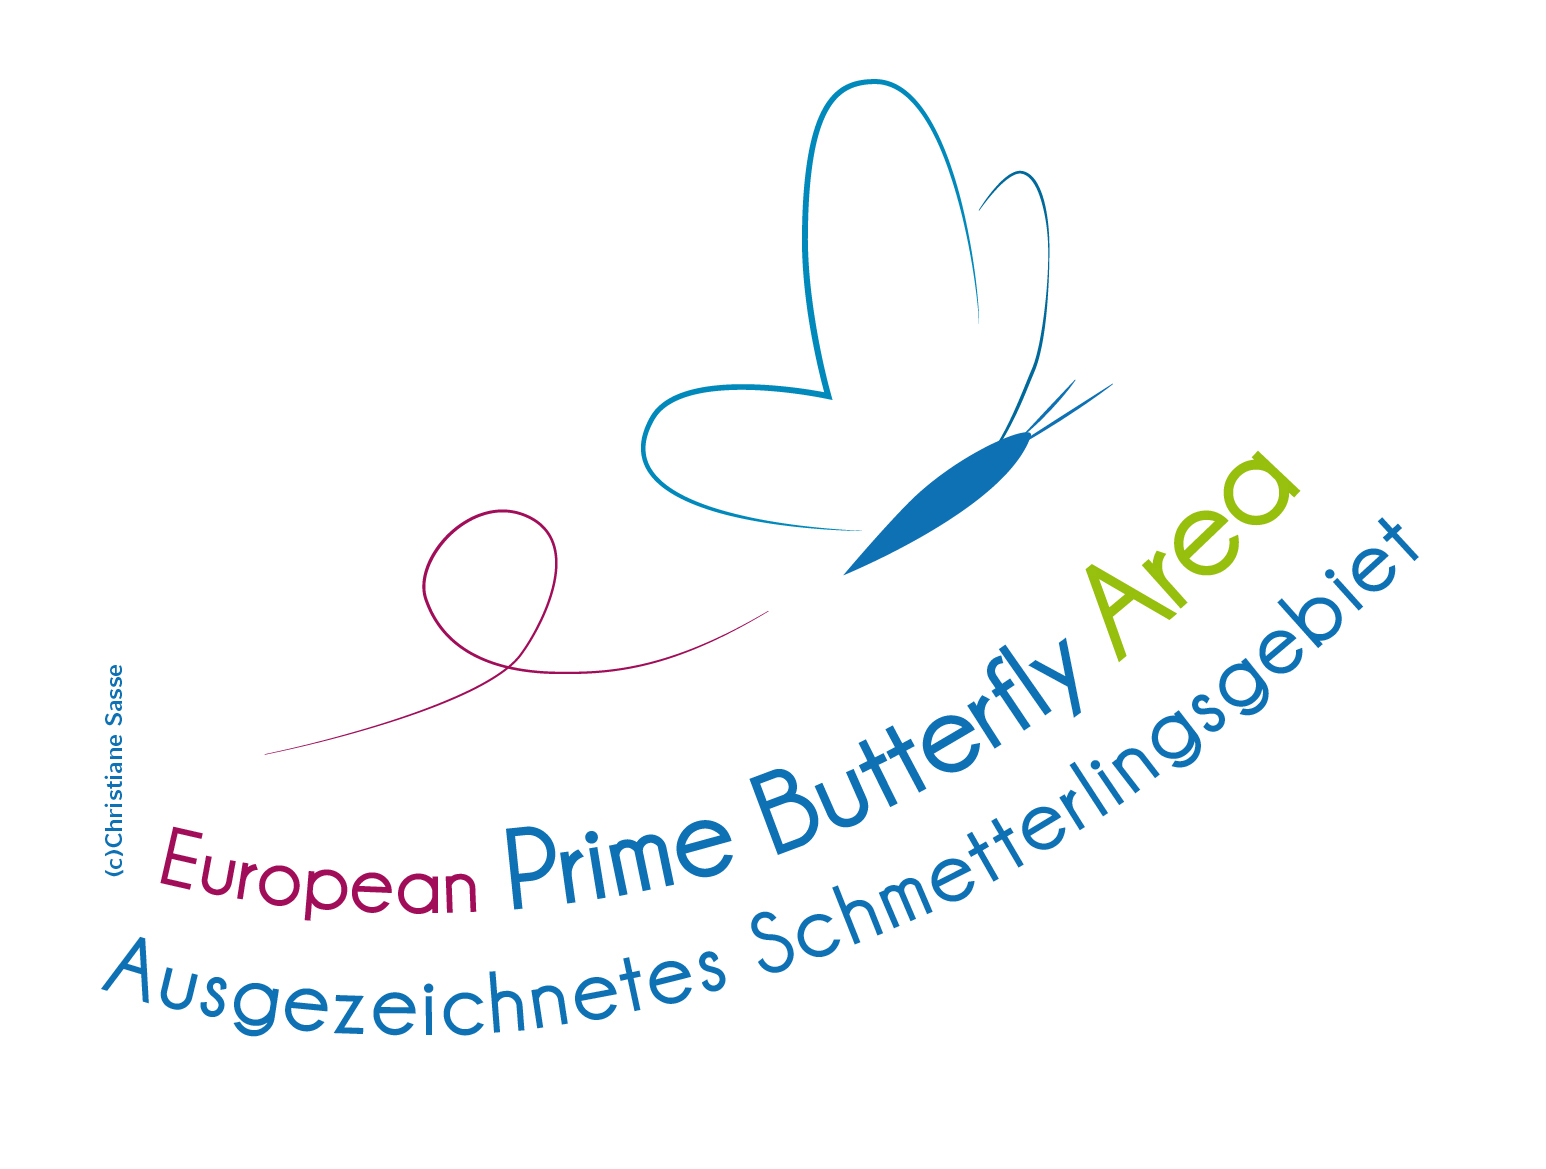 EPBA Schmetterling 2017 3c 01